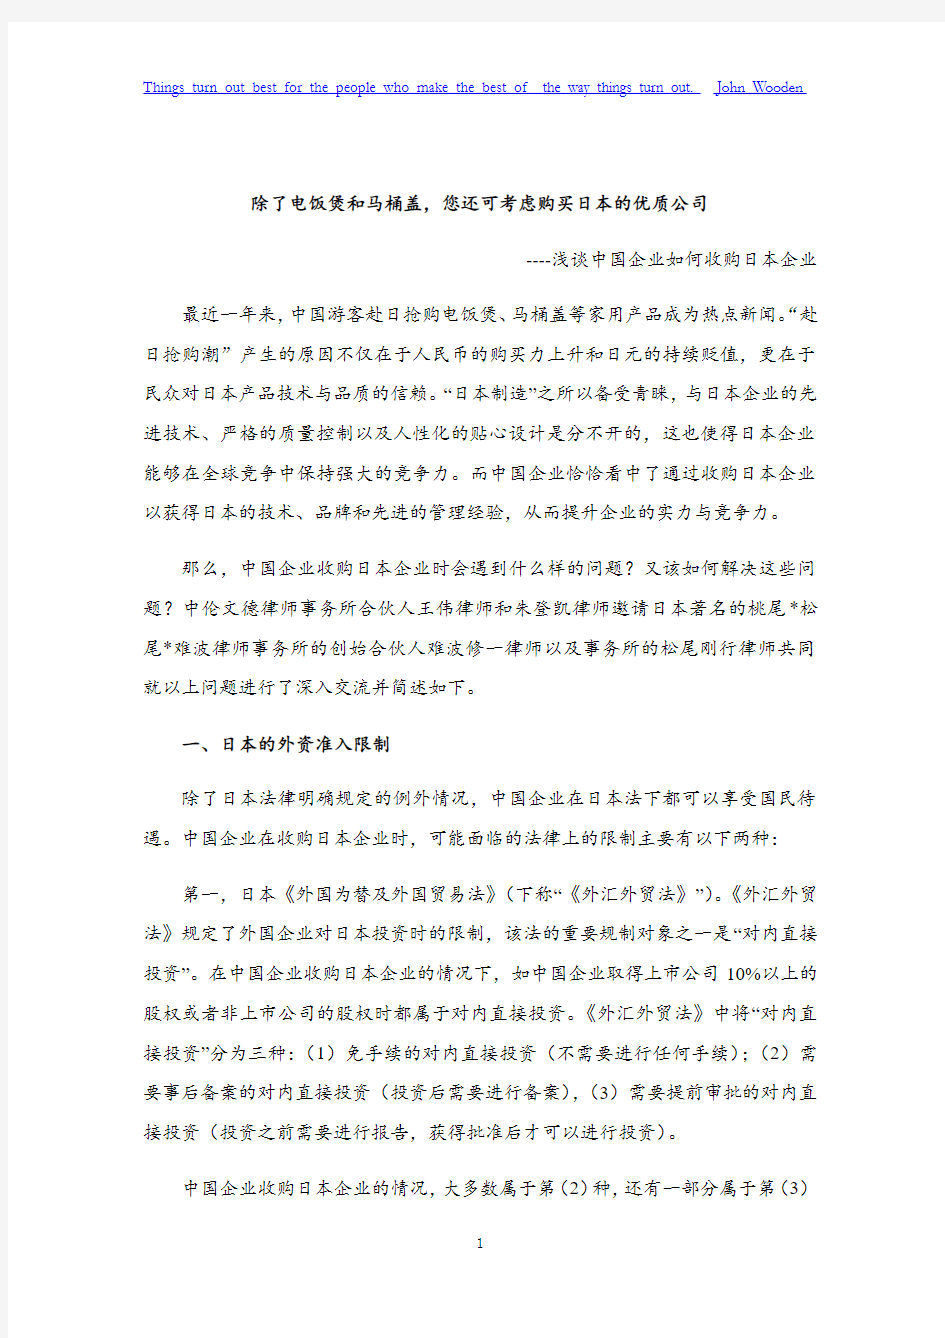 中国企业收购日本企业有关法律问题-20150526_final